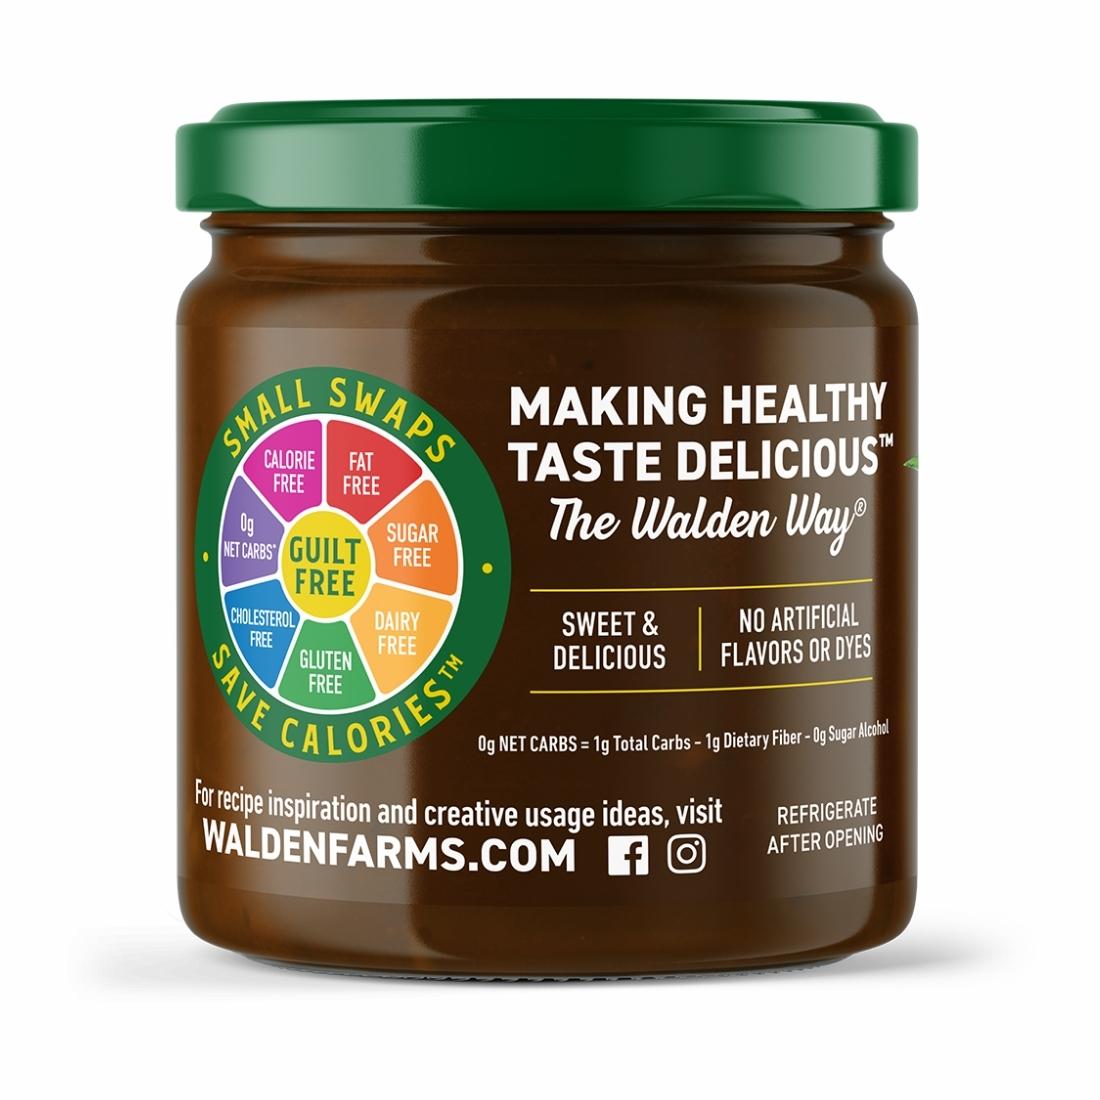 Walden Farms Calorie Free Amazin' Mayo - 12 oz jar